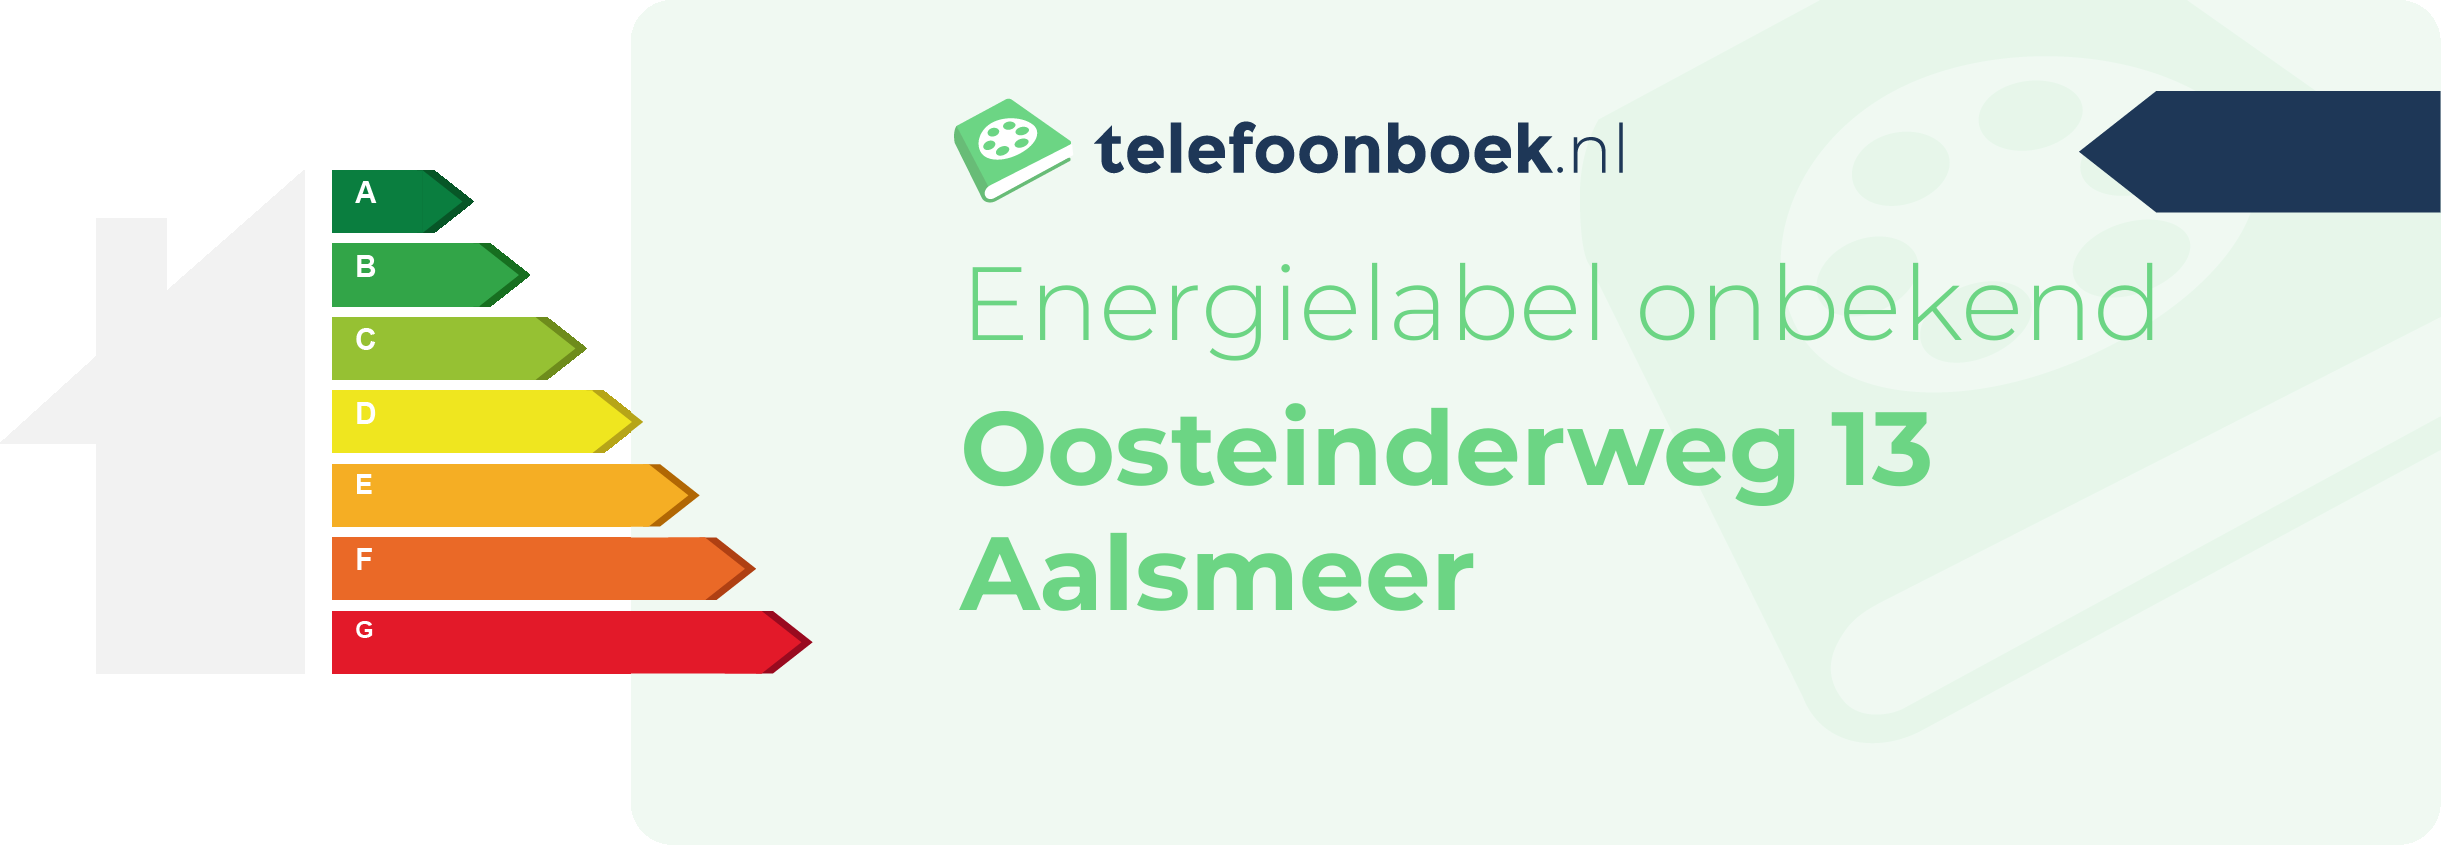 Energielabel Oosteinderweg 13 Aalsmeer